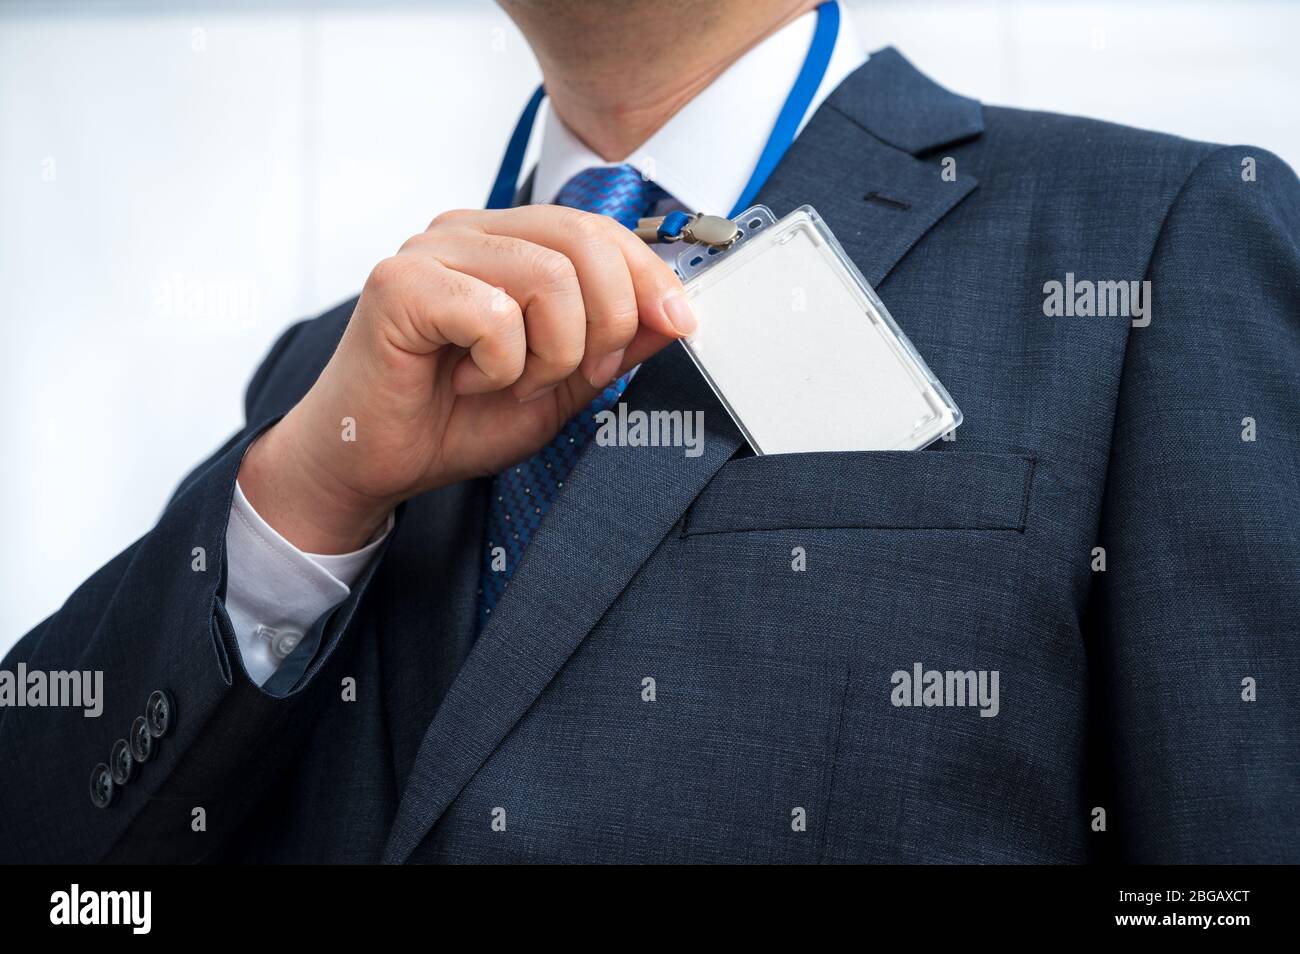 Man in suit portant une étiquette d'identité vierges ou le nom sur un cordon de la carte lors d'une exposition ou de la conférence Banque D'Images